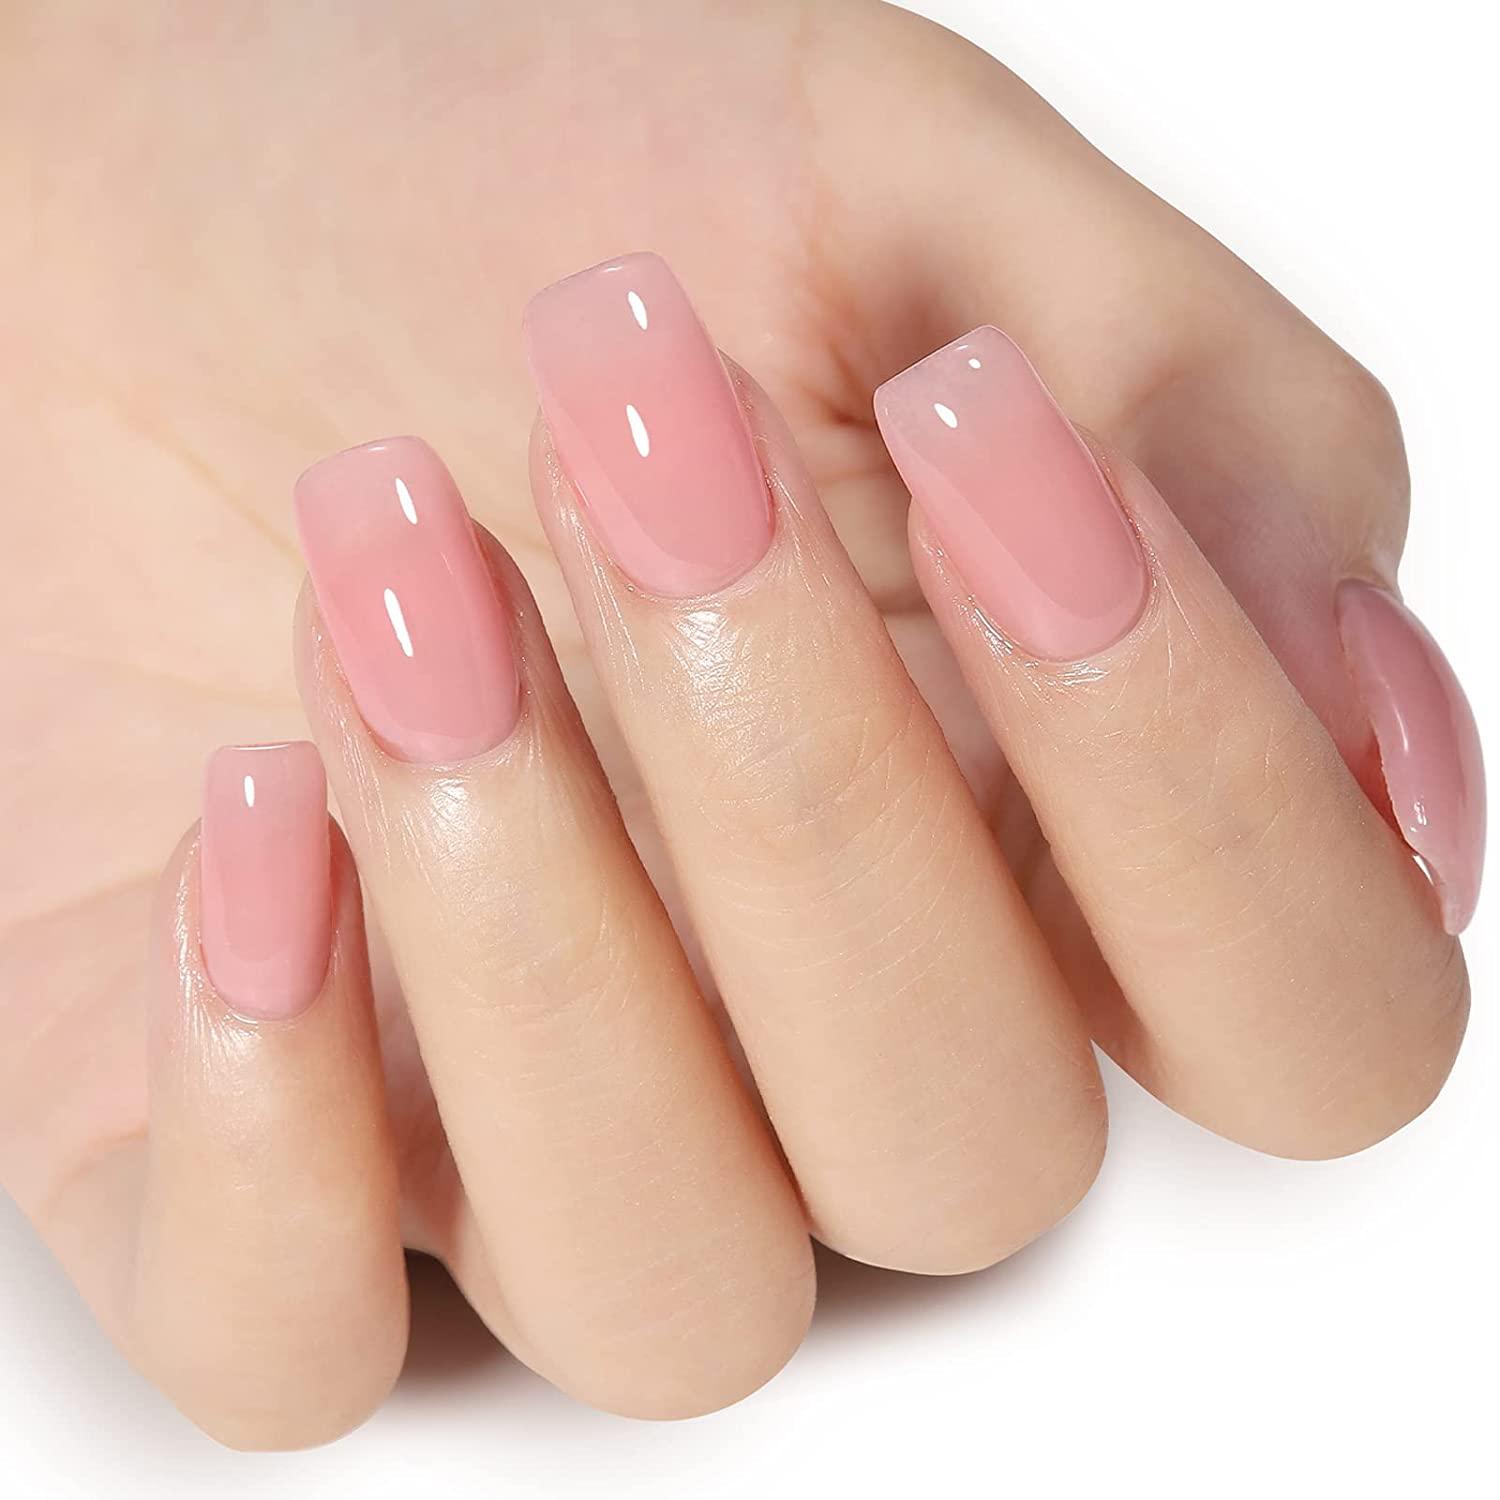 GetUSCart- AILLSA Gel Nail Polish - Natural Nude Gel Polish Sheer Pink  Neutral Color Jelly Nail Polish Gel Soak Off U V Gel Top Coat Nails for Nail  Art French Manicure at